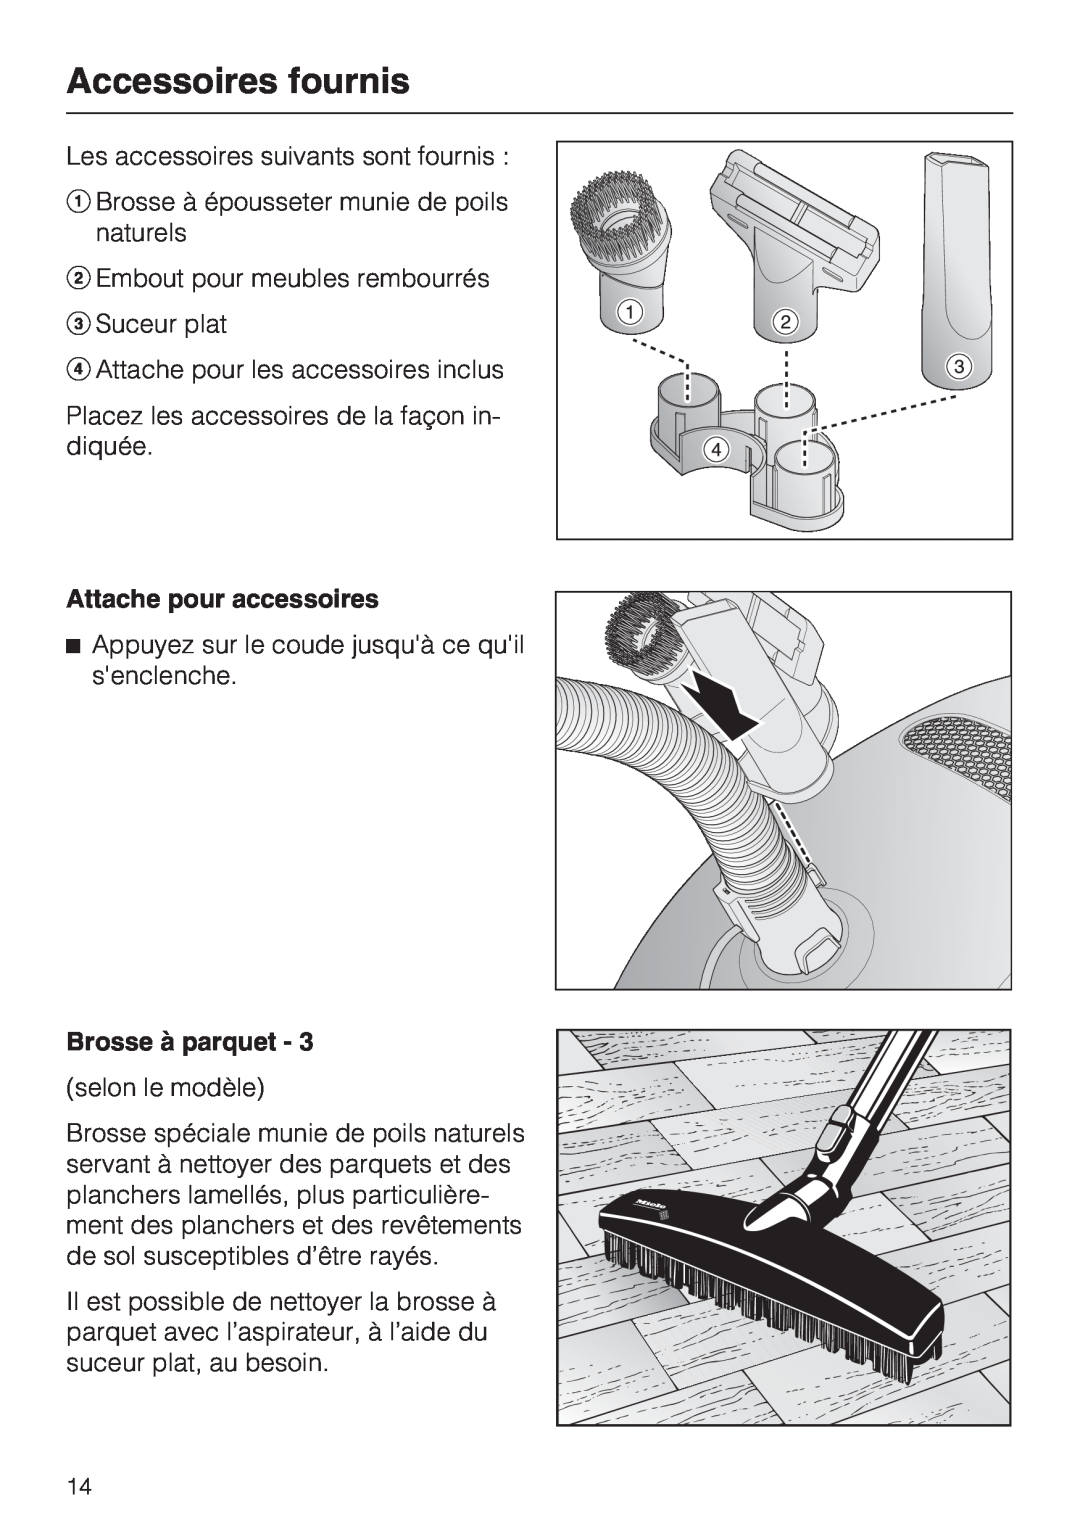 Miele S 2001 manual Accessoires fournis, Attache pour accessoires, Brosse à parquet 